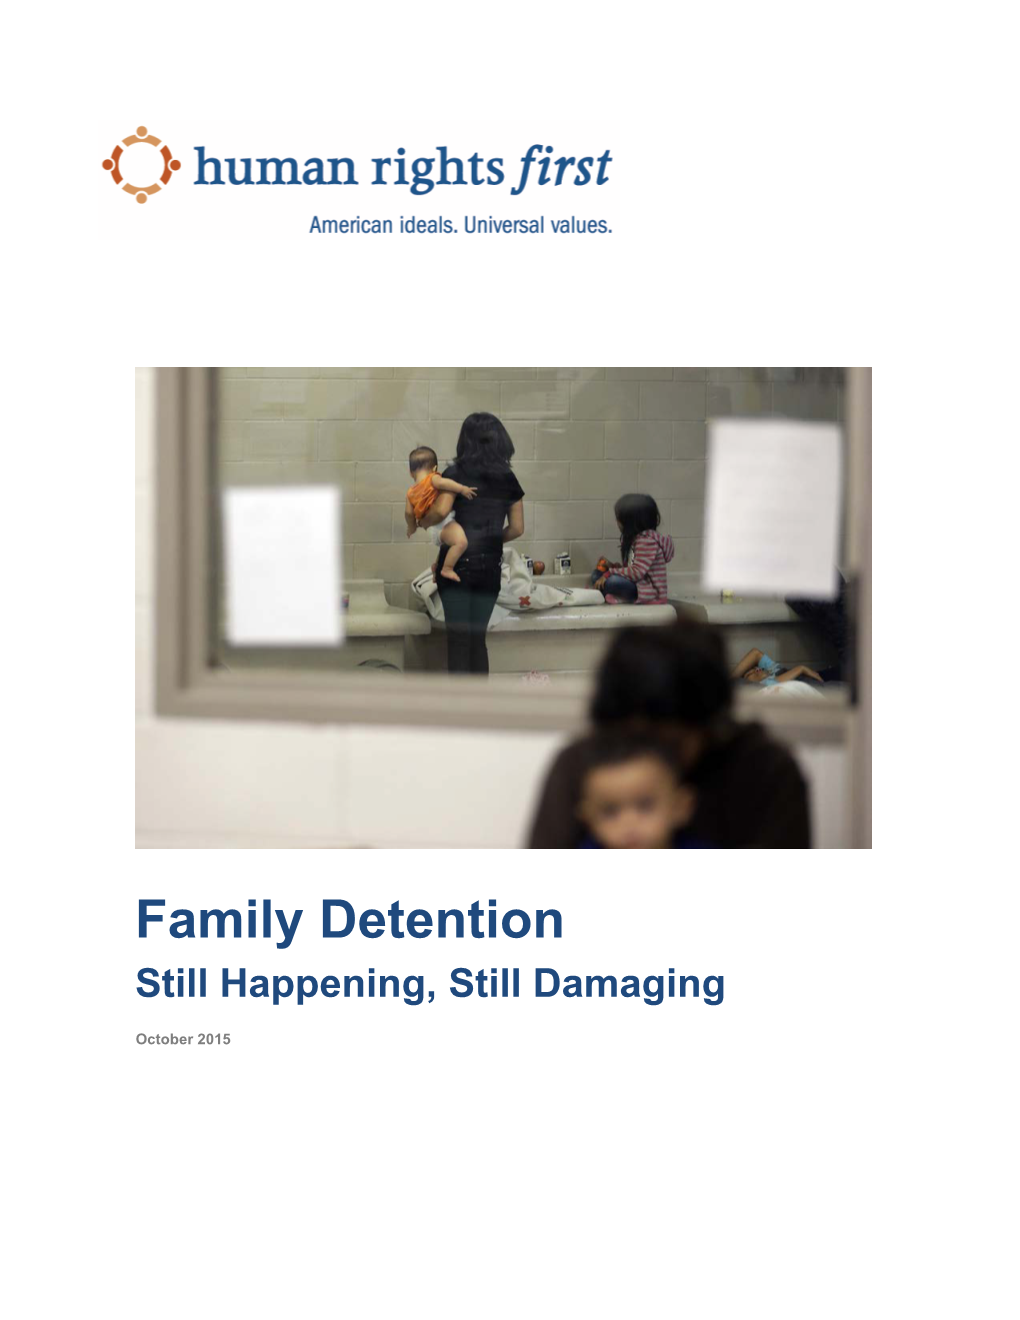 Family Detention Still Happening, Still Damaging